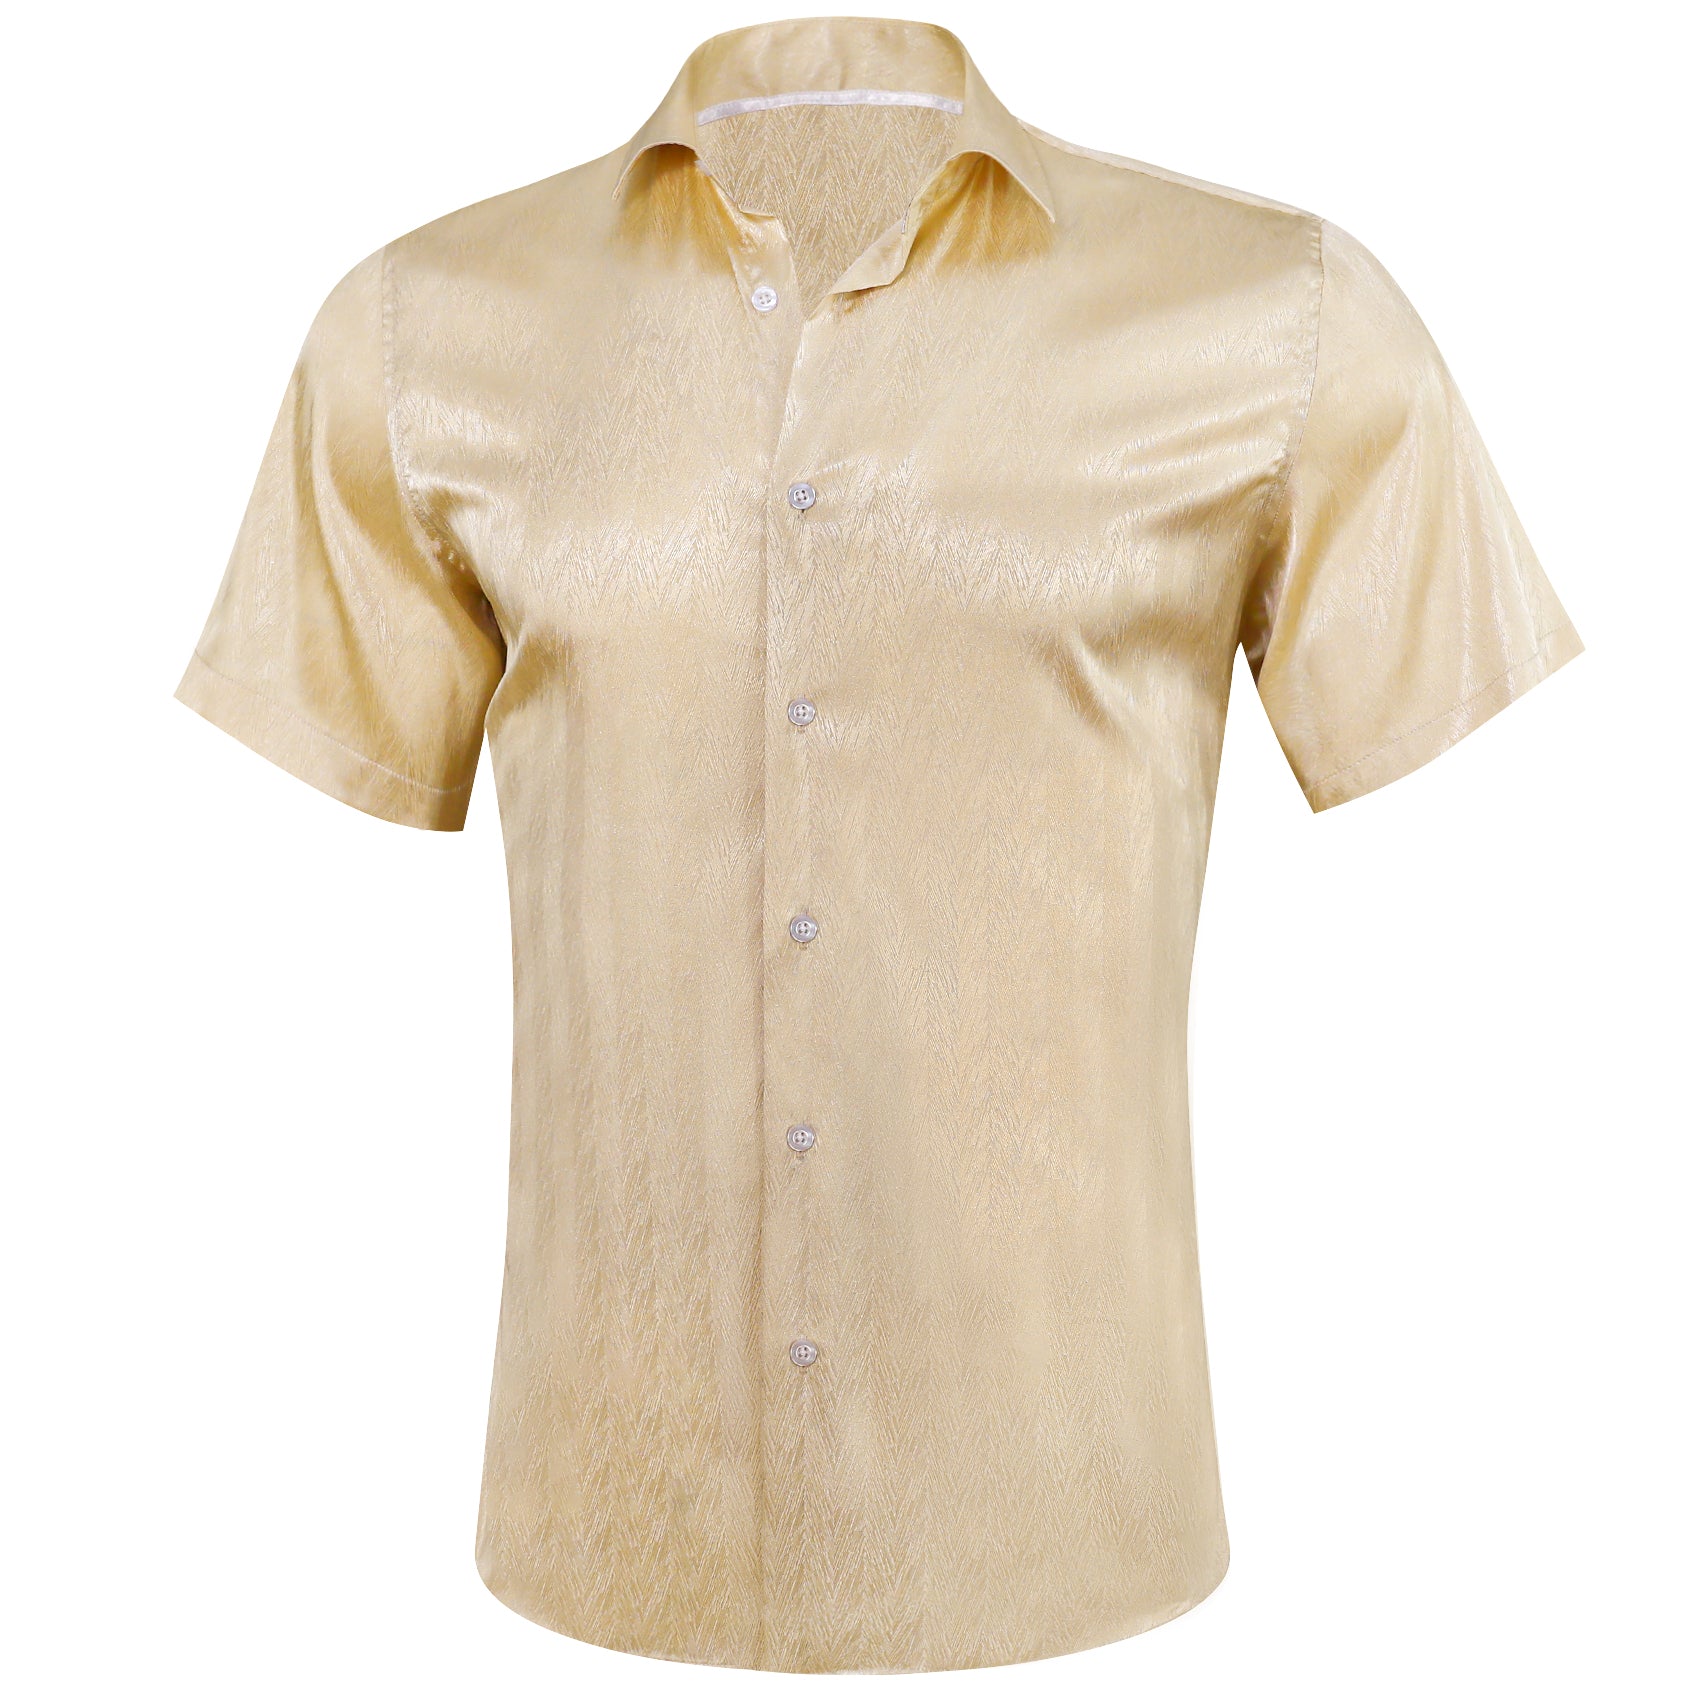 Barry.wang Light Gold Solid Short Sleeves Silk Shirt